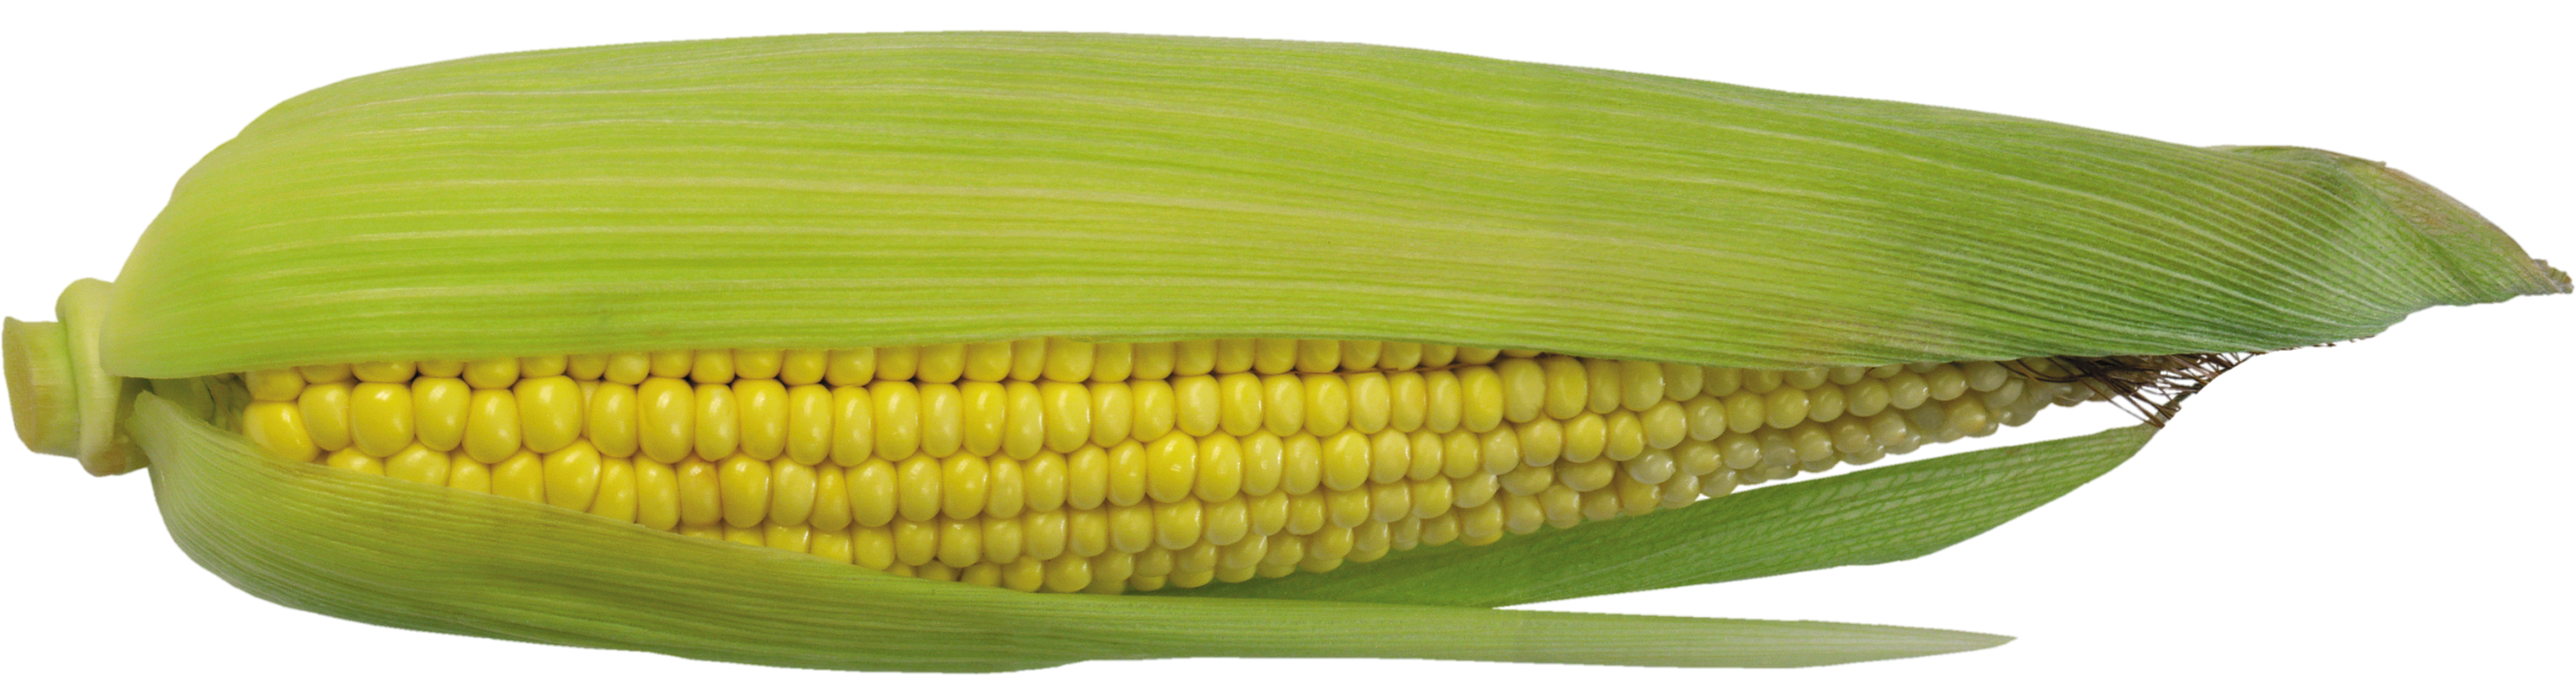 Corn-12